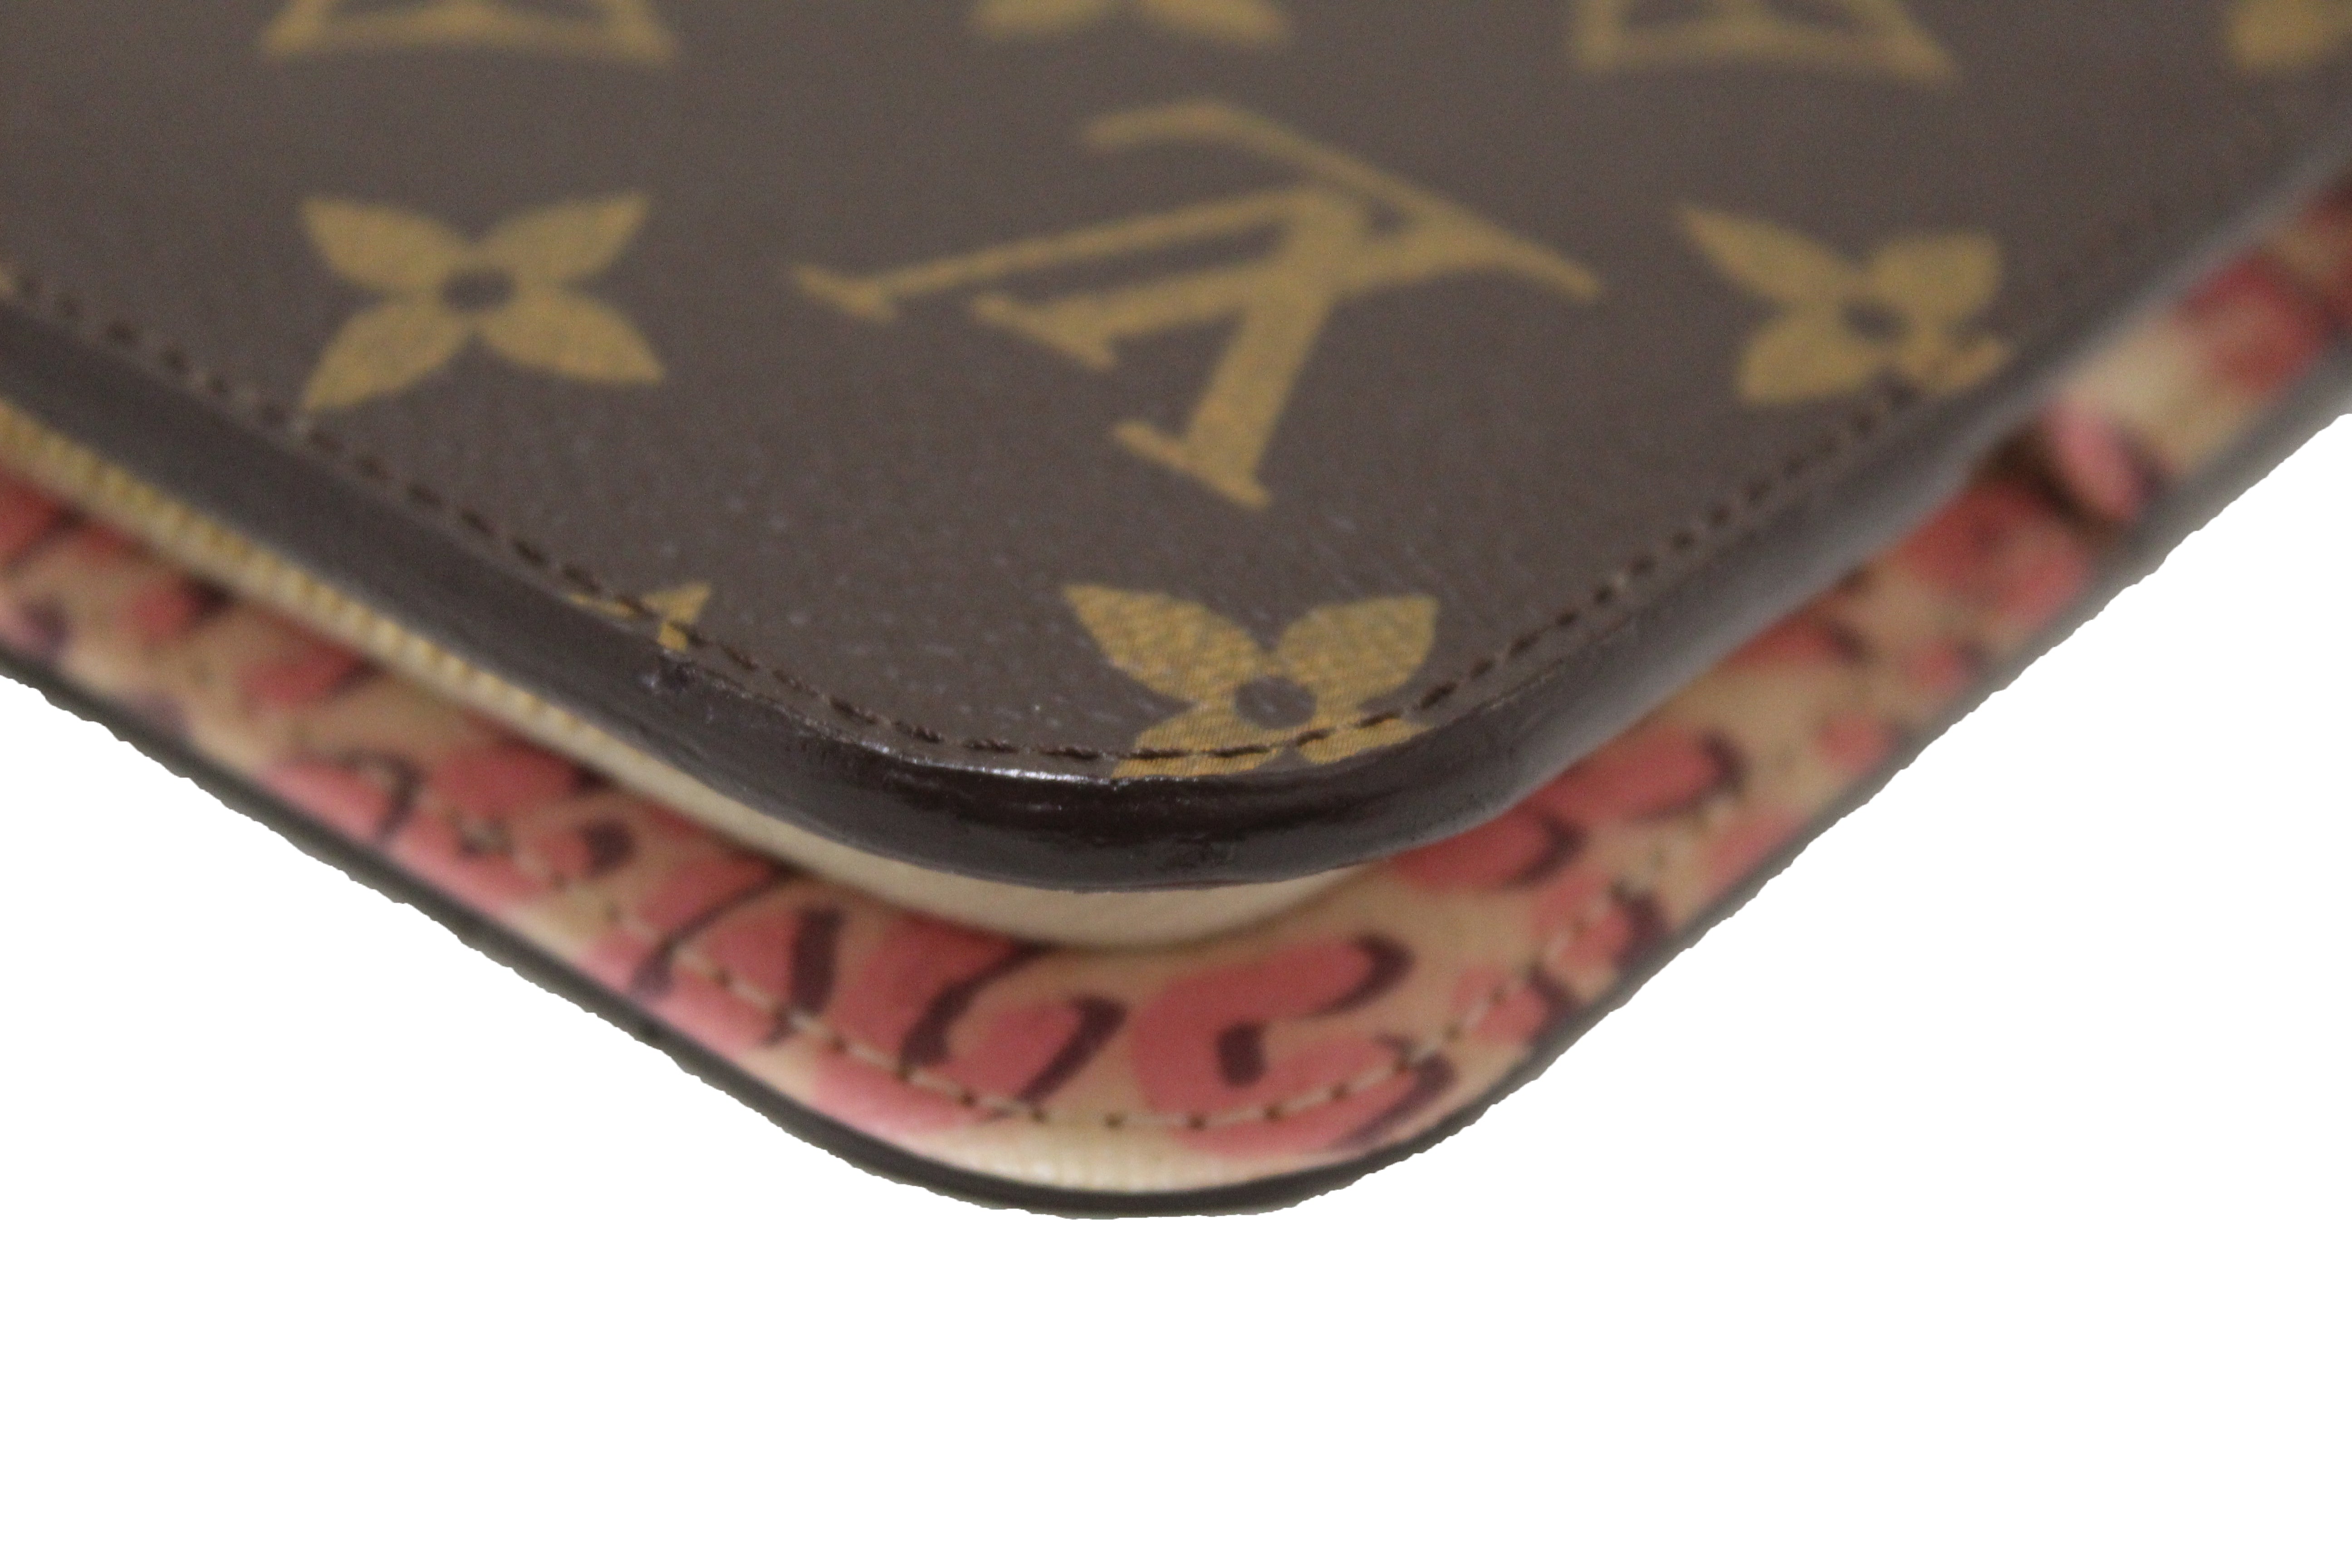 Louis Vuitton Monogram Insolite Wallet Stephen Sprouse Leopard